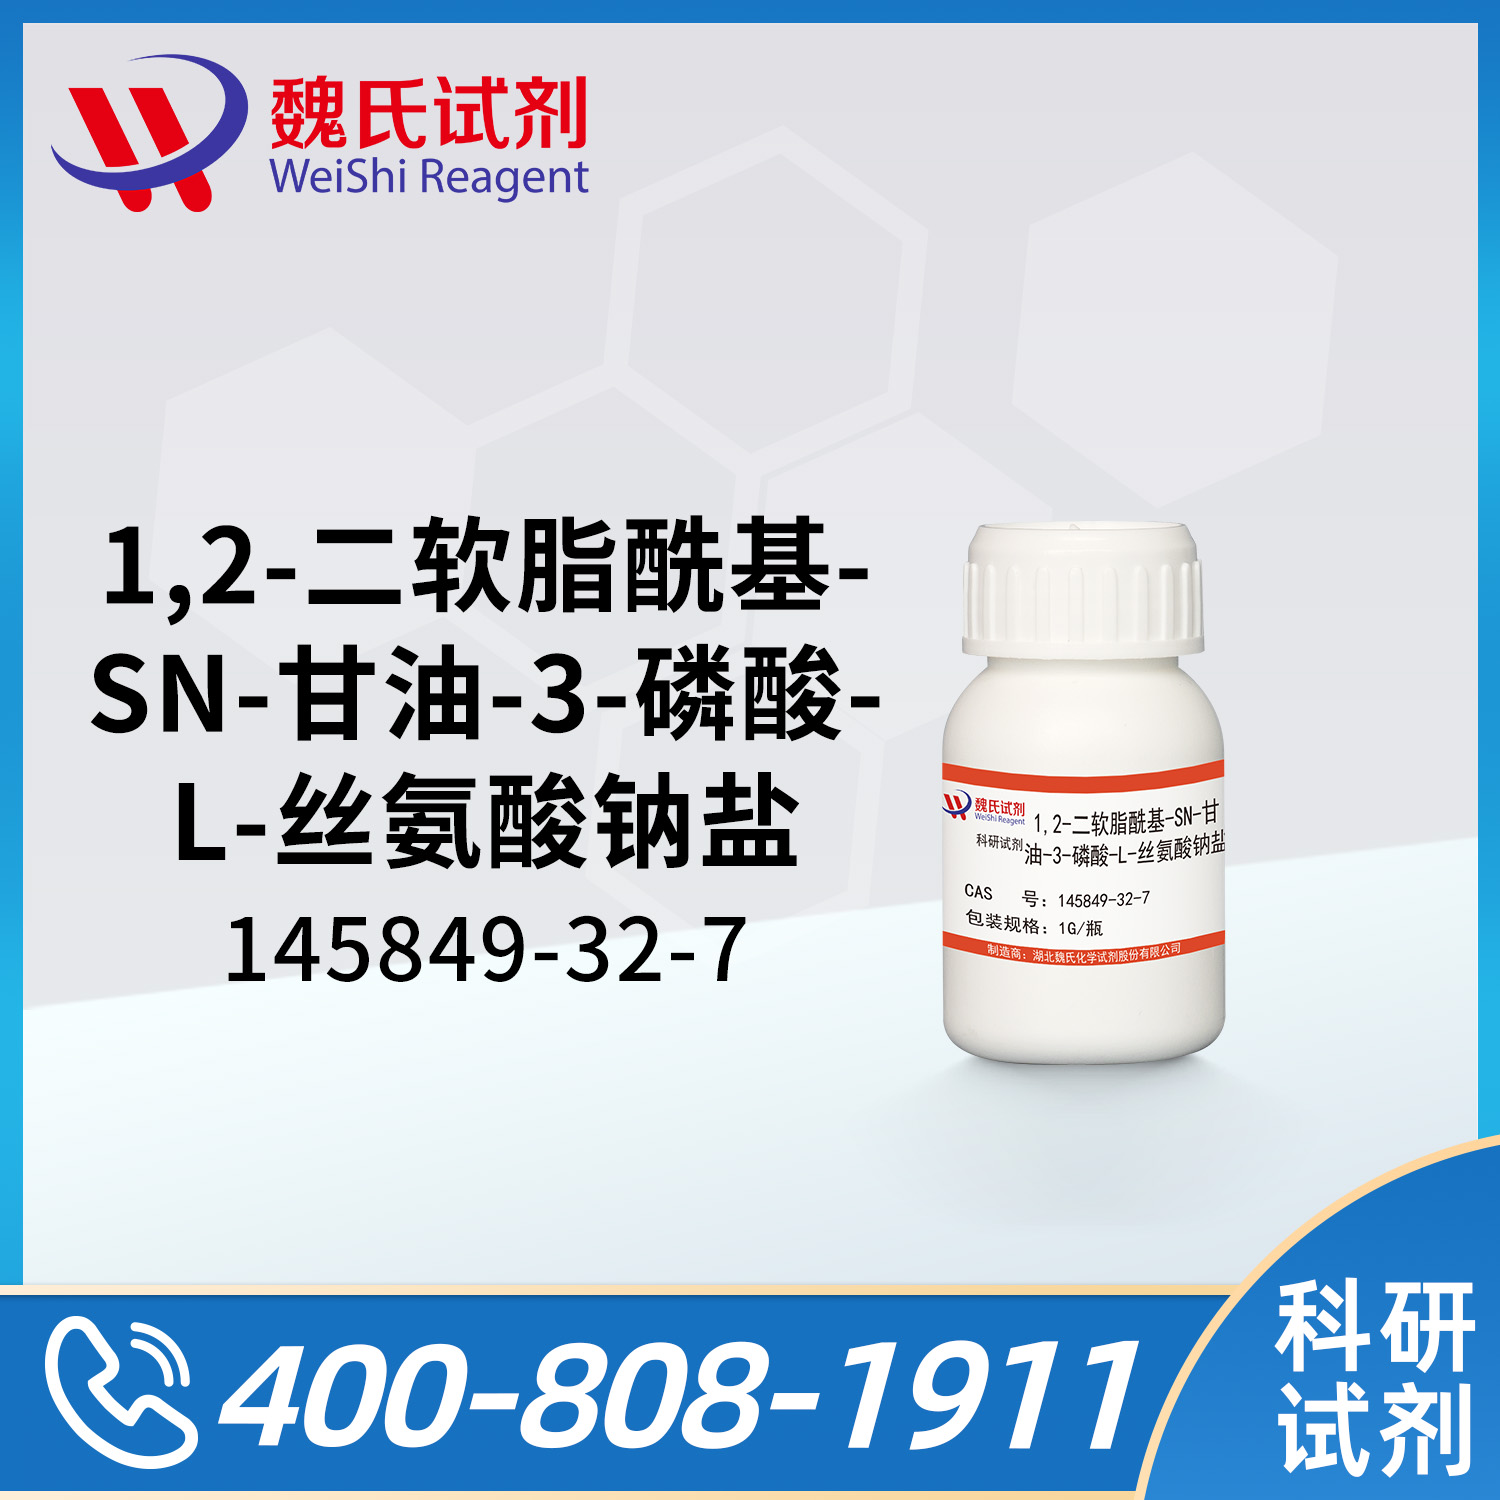 1,2-二软脂酰基-SN-甘油-3-磷酸-L-丝氨酸钠盐